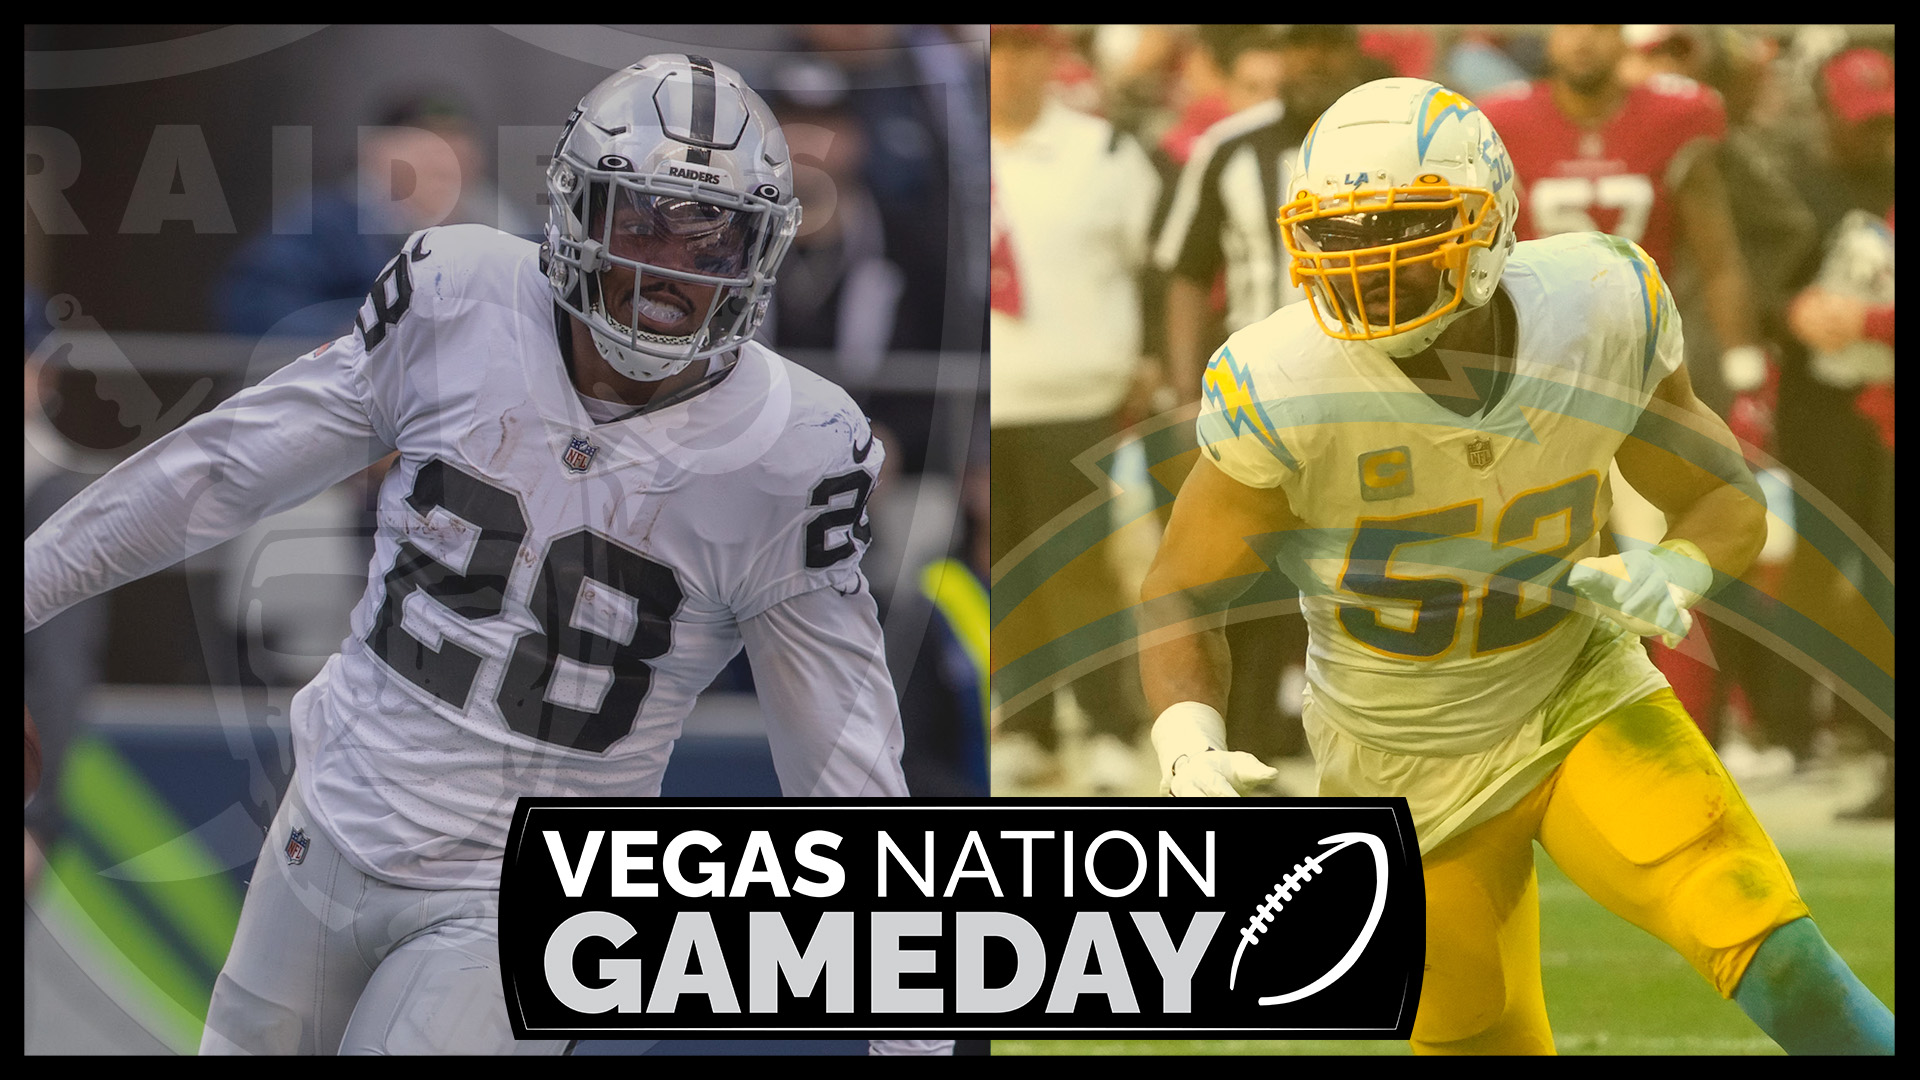 Raiders Seek Week 1 Revenge Over Chargers | Vegas Nation Gameday